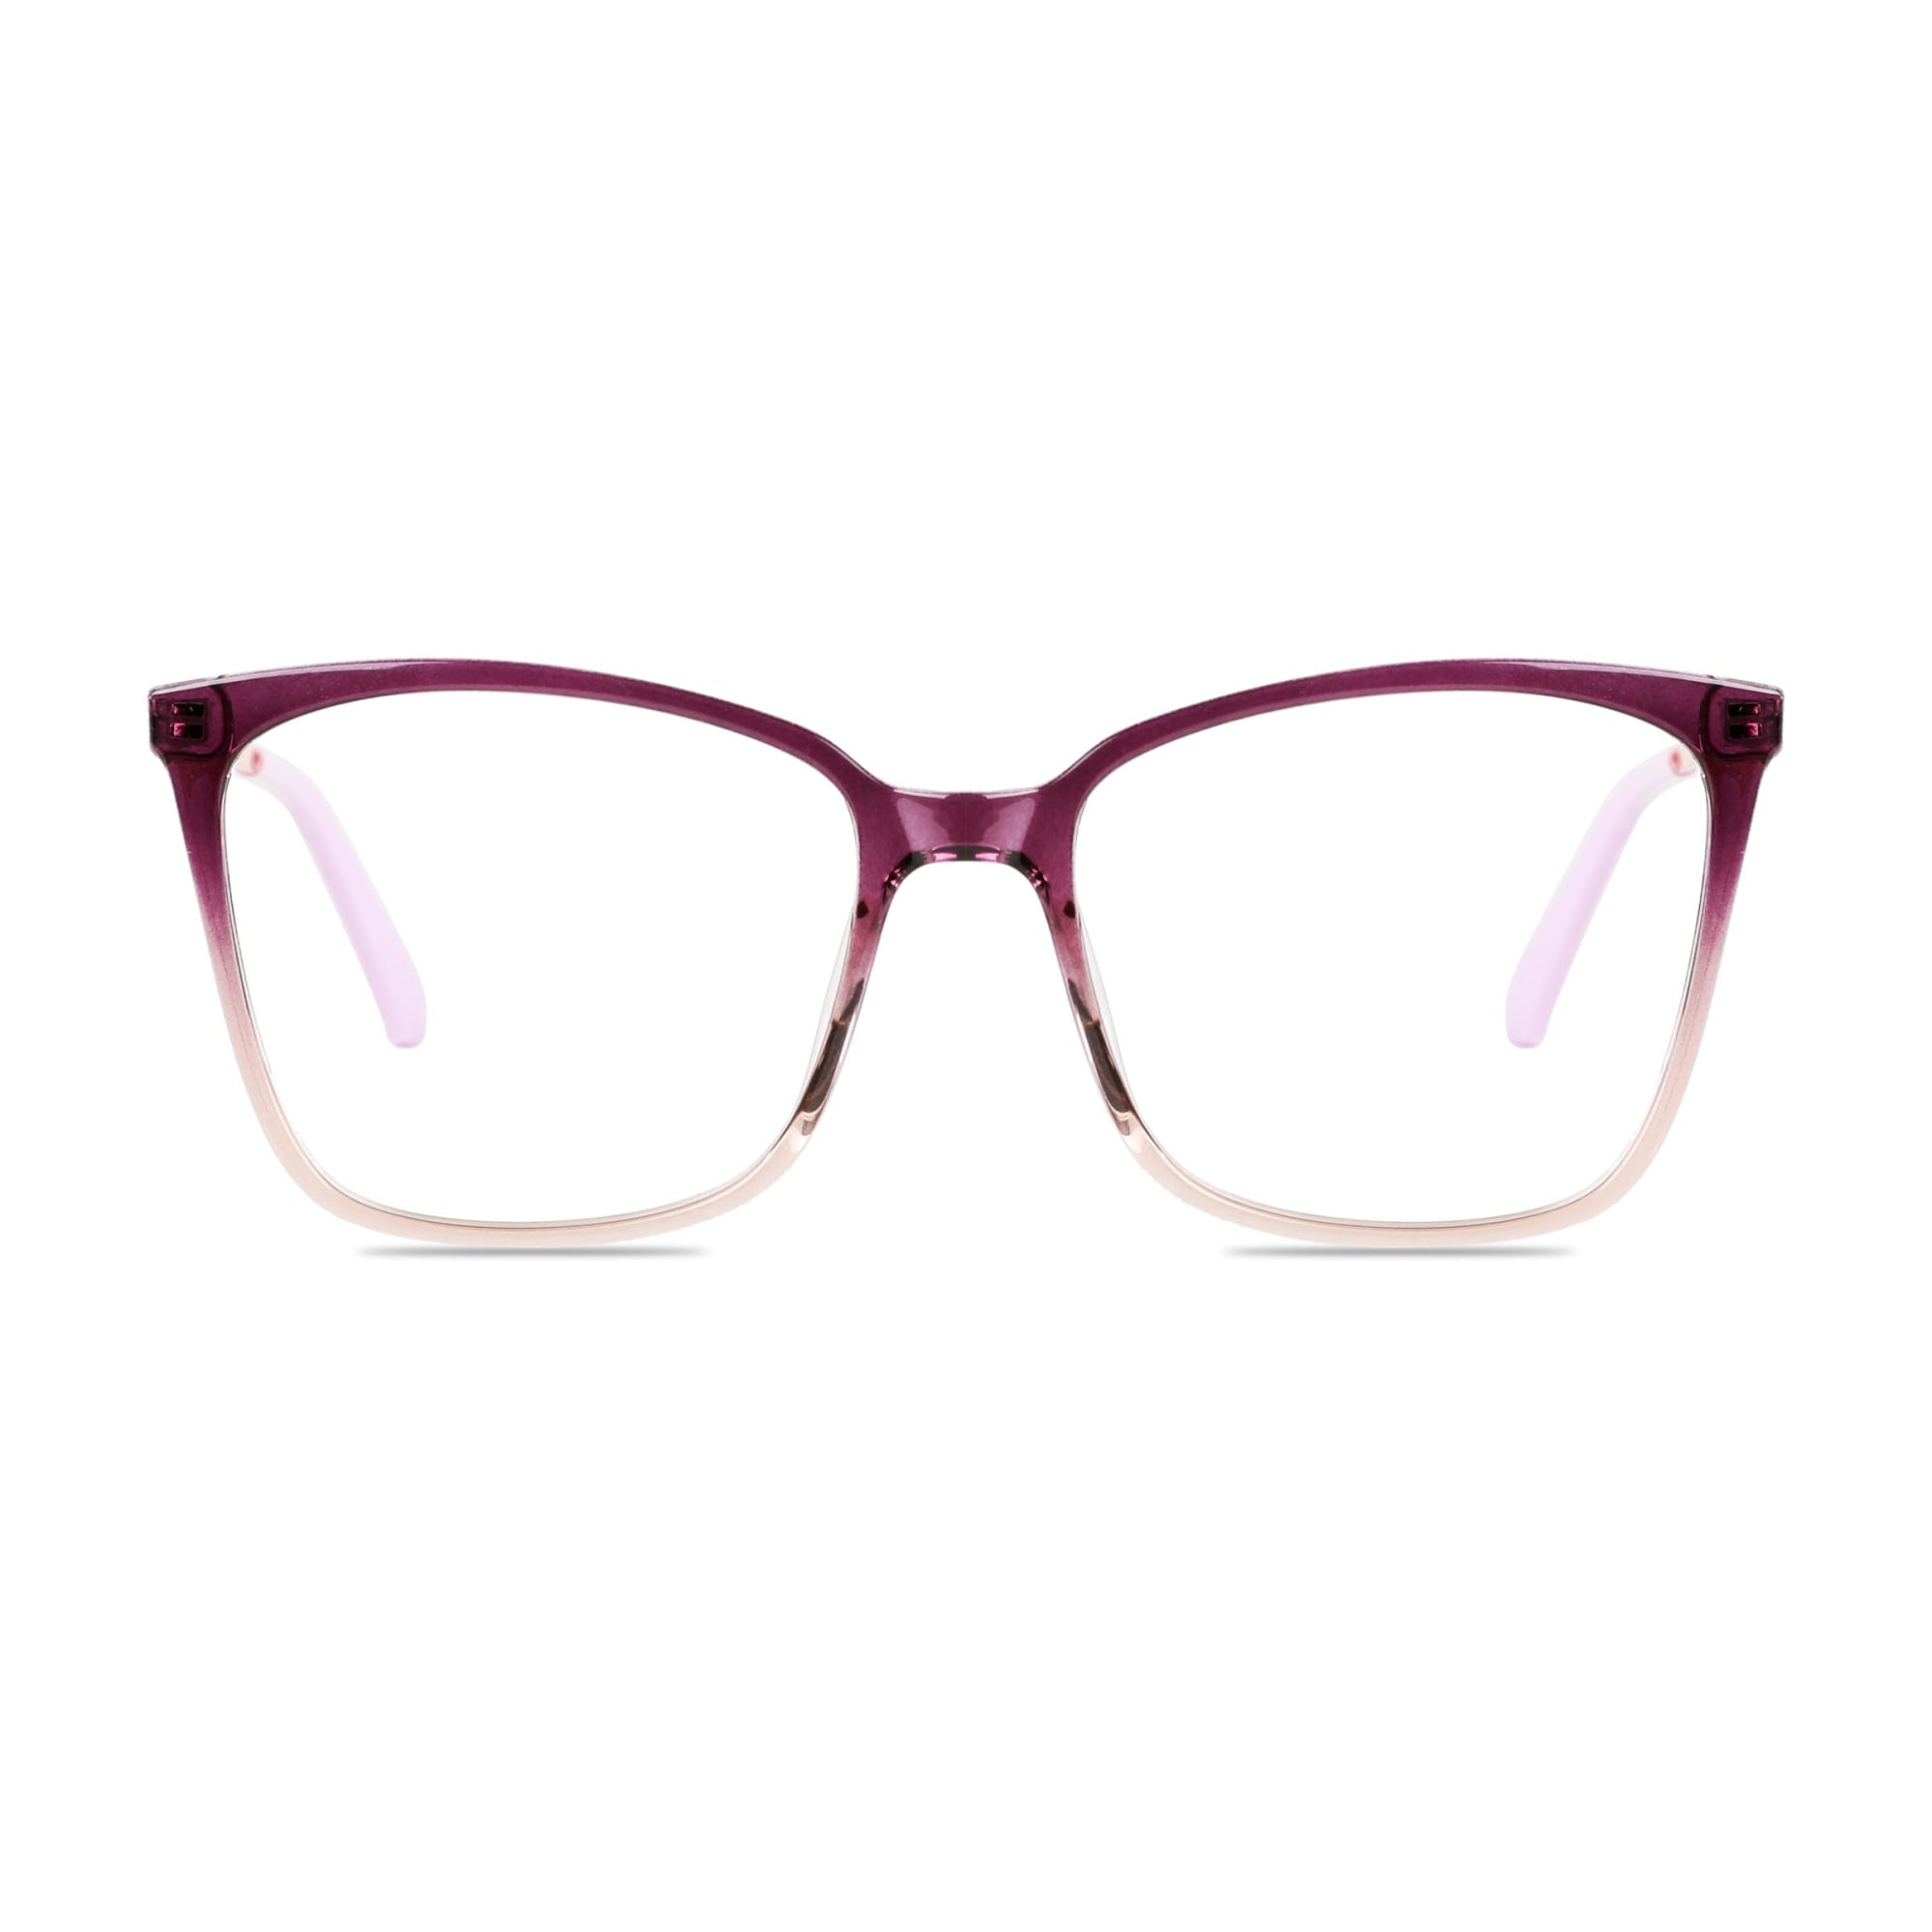 Cat Eye Glasses VK10538